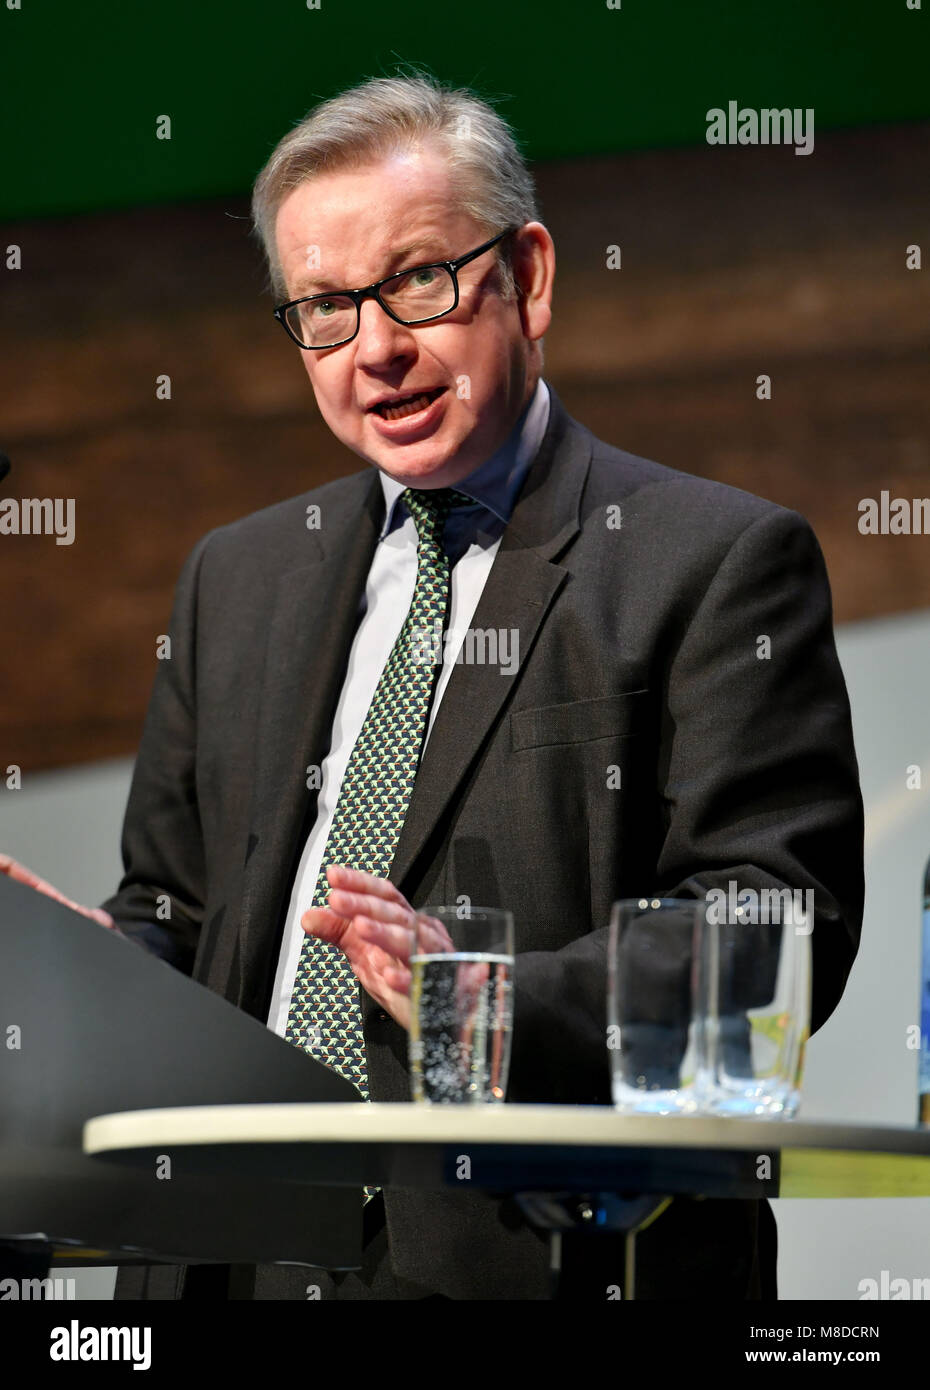 Michael Gove MP il Segretario di Stato per l'ambiente, l'alimentazione e gli affari rurali (Ambiente Segretario) intervenendo alla conferenza NFU 2018. Foto Stock